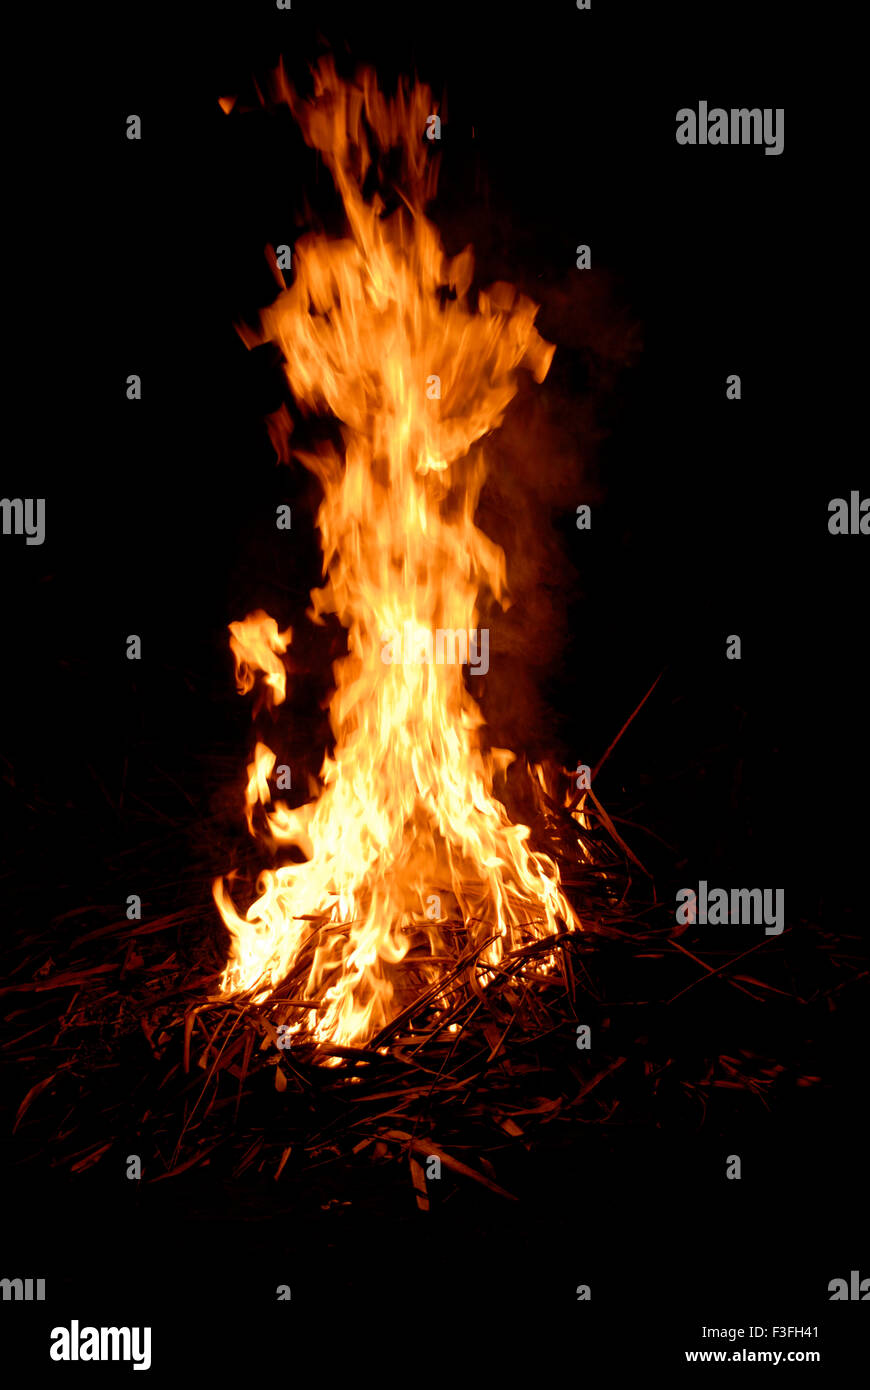 Fuoco e fiamme immagini e fotografie stock ad alta risoluzione - Alamy